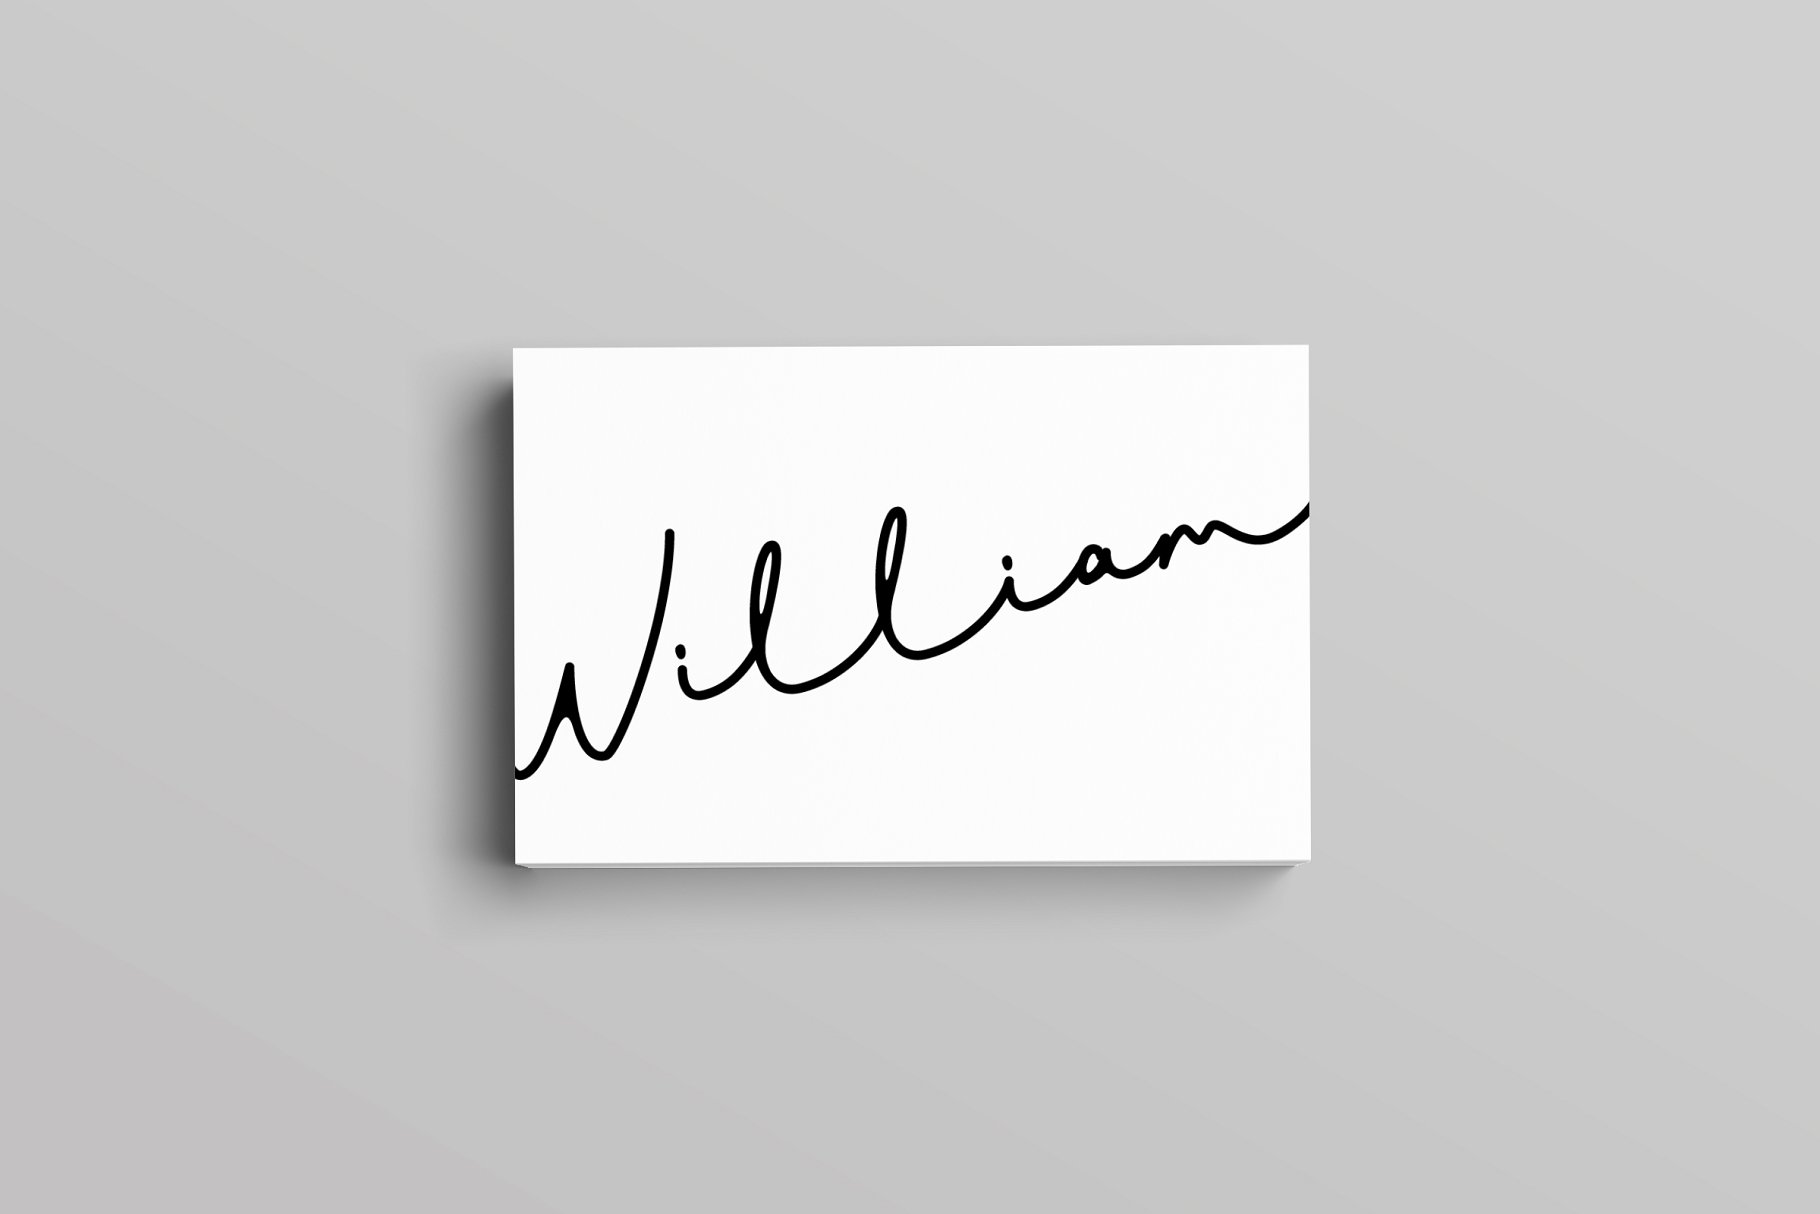 极简创意艺术名片设计模板 William Business Card Template插图(2)